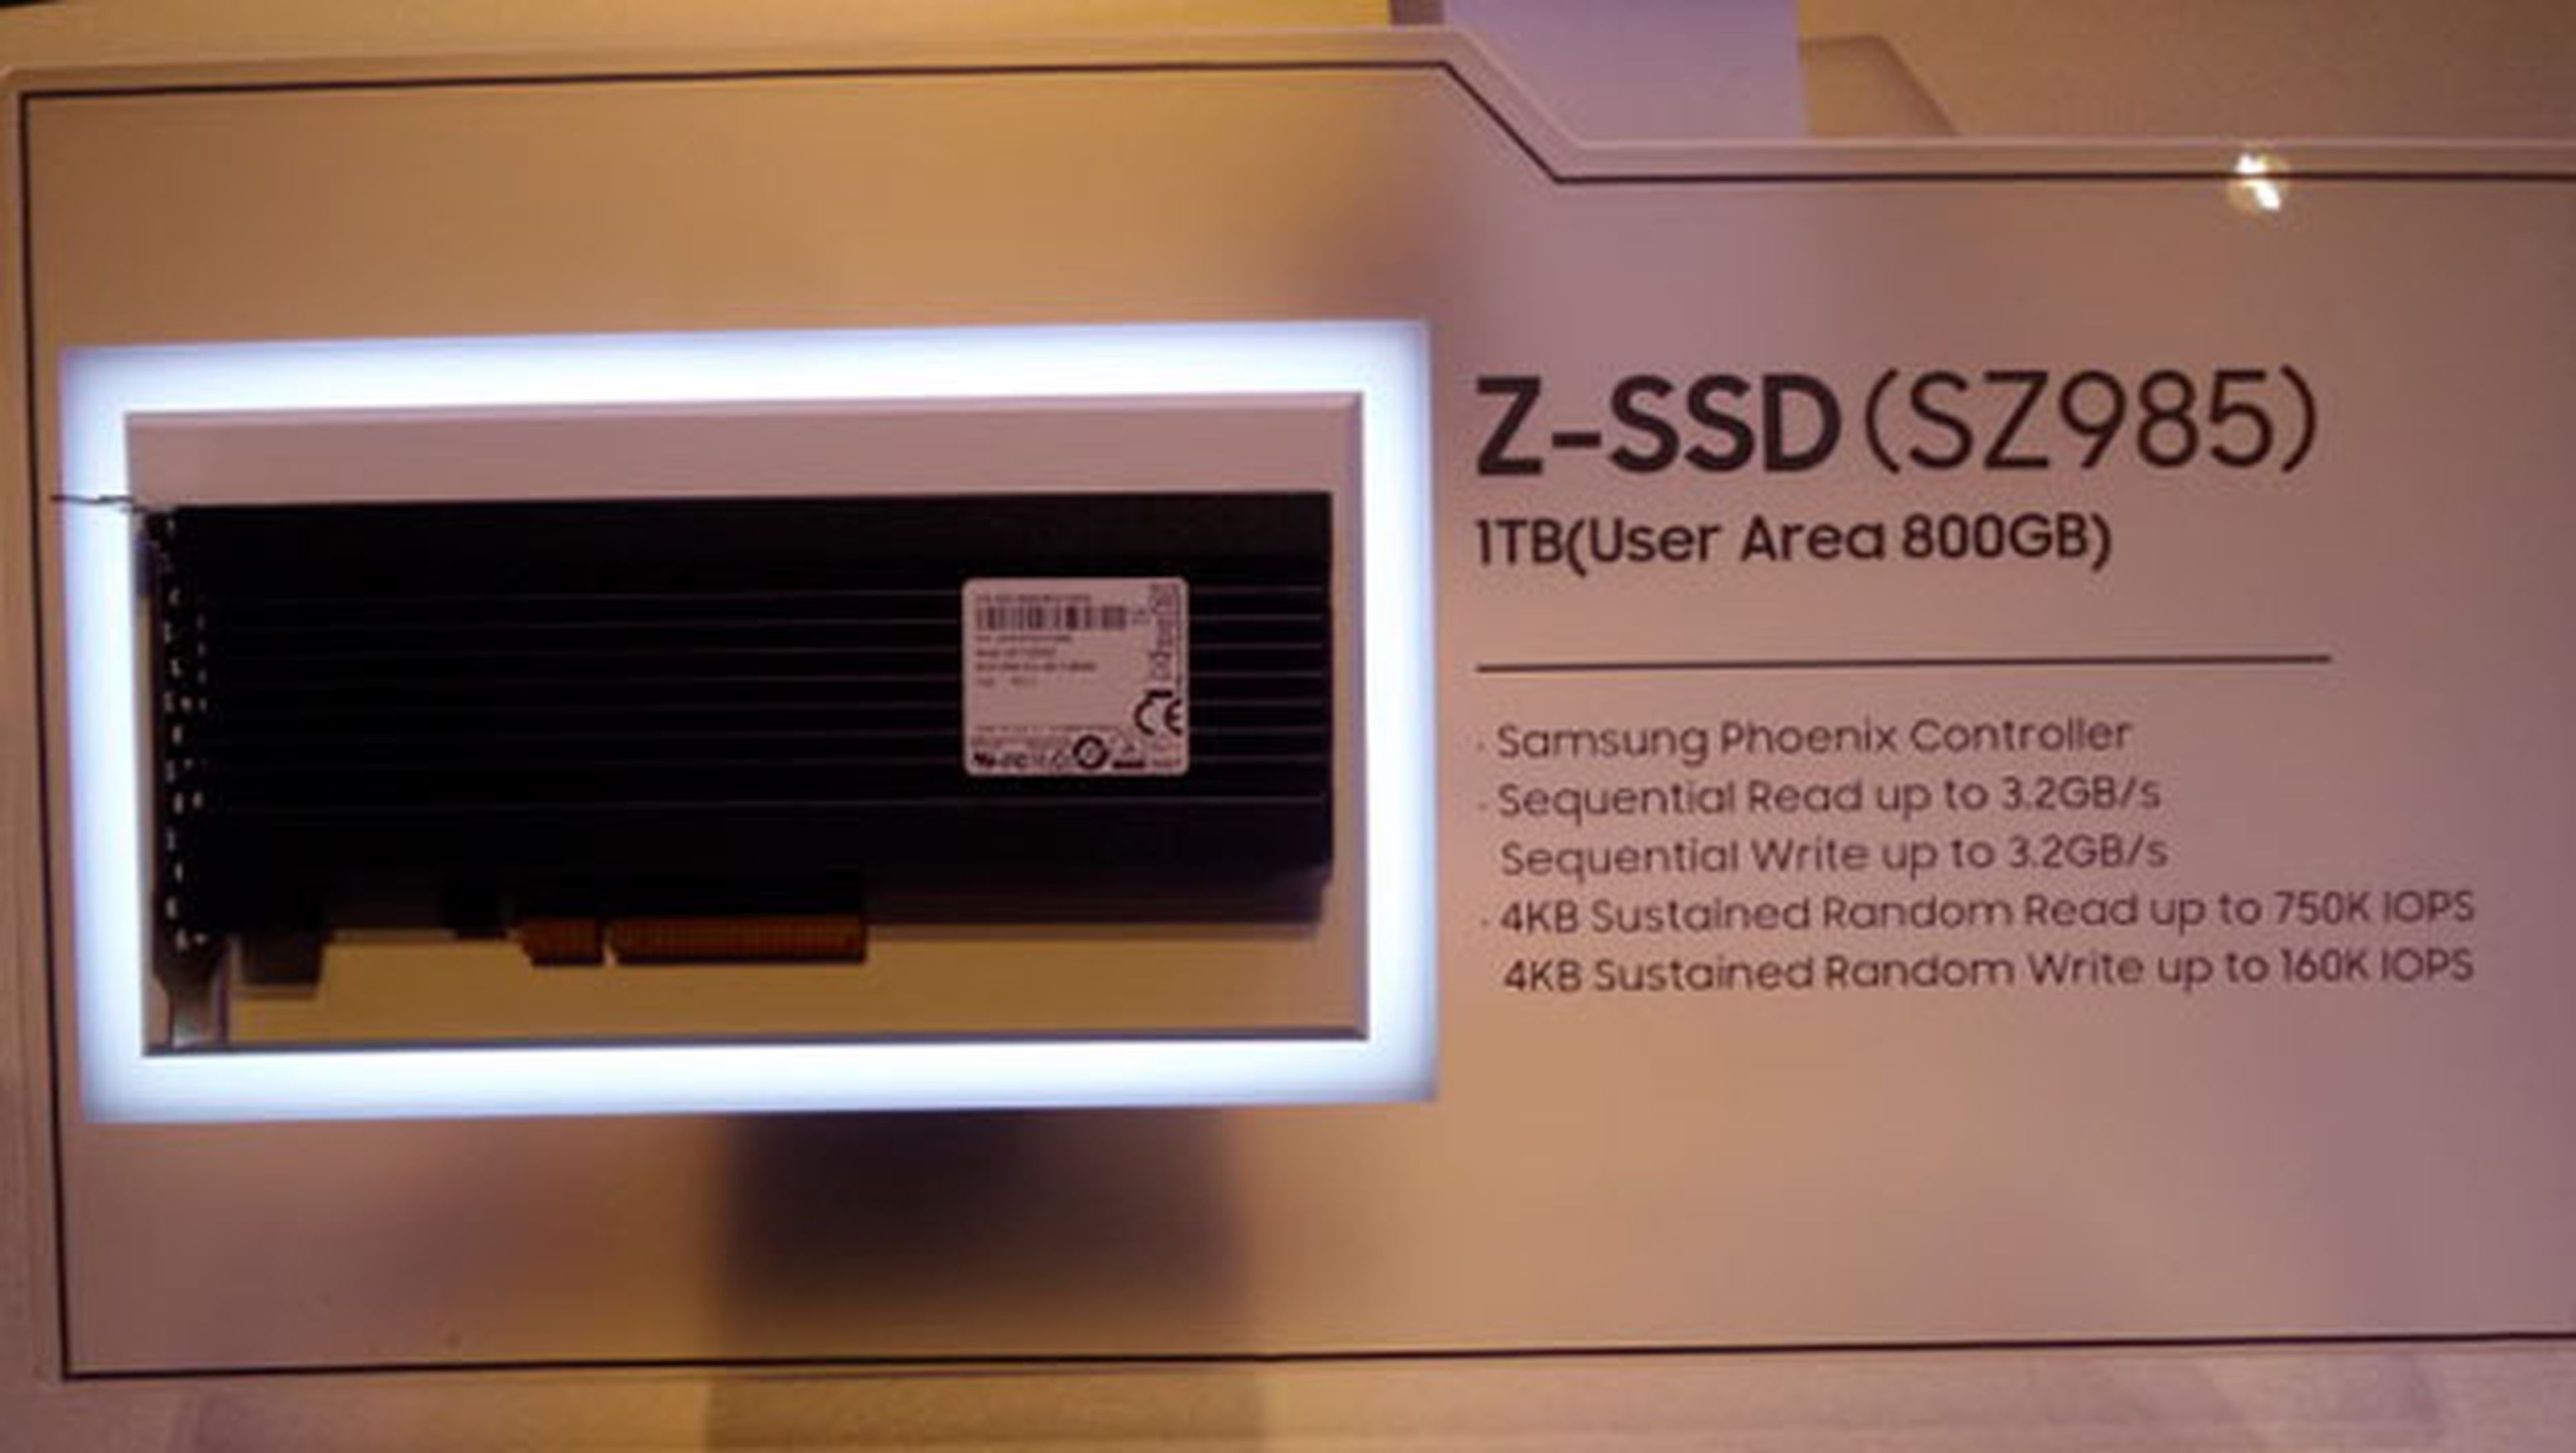 Samsung podría empezar a fabricar los Z-SSD en 2018